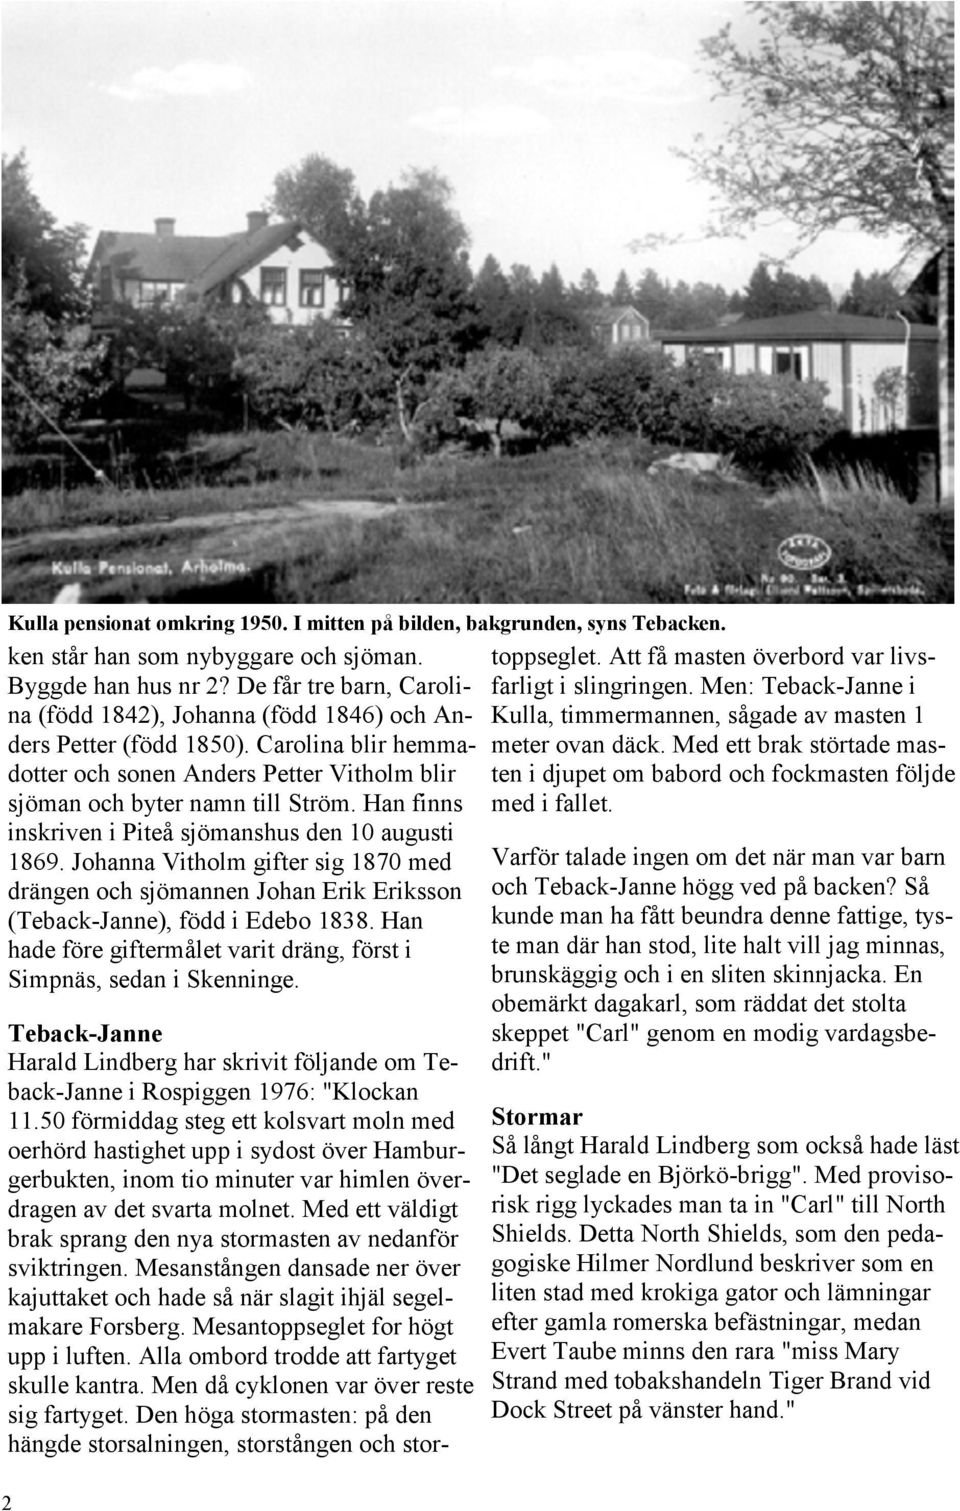 Han finns inskriven i Piteå sjömanshus den 10 augusti 1869. Johanna Vitholm gifter sig 1870 med drängen och sjömannen Johan Erik Eriksson (Teback-Janne), född i Edebo 1838.